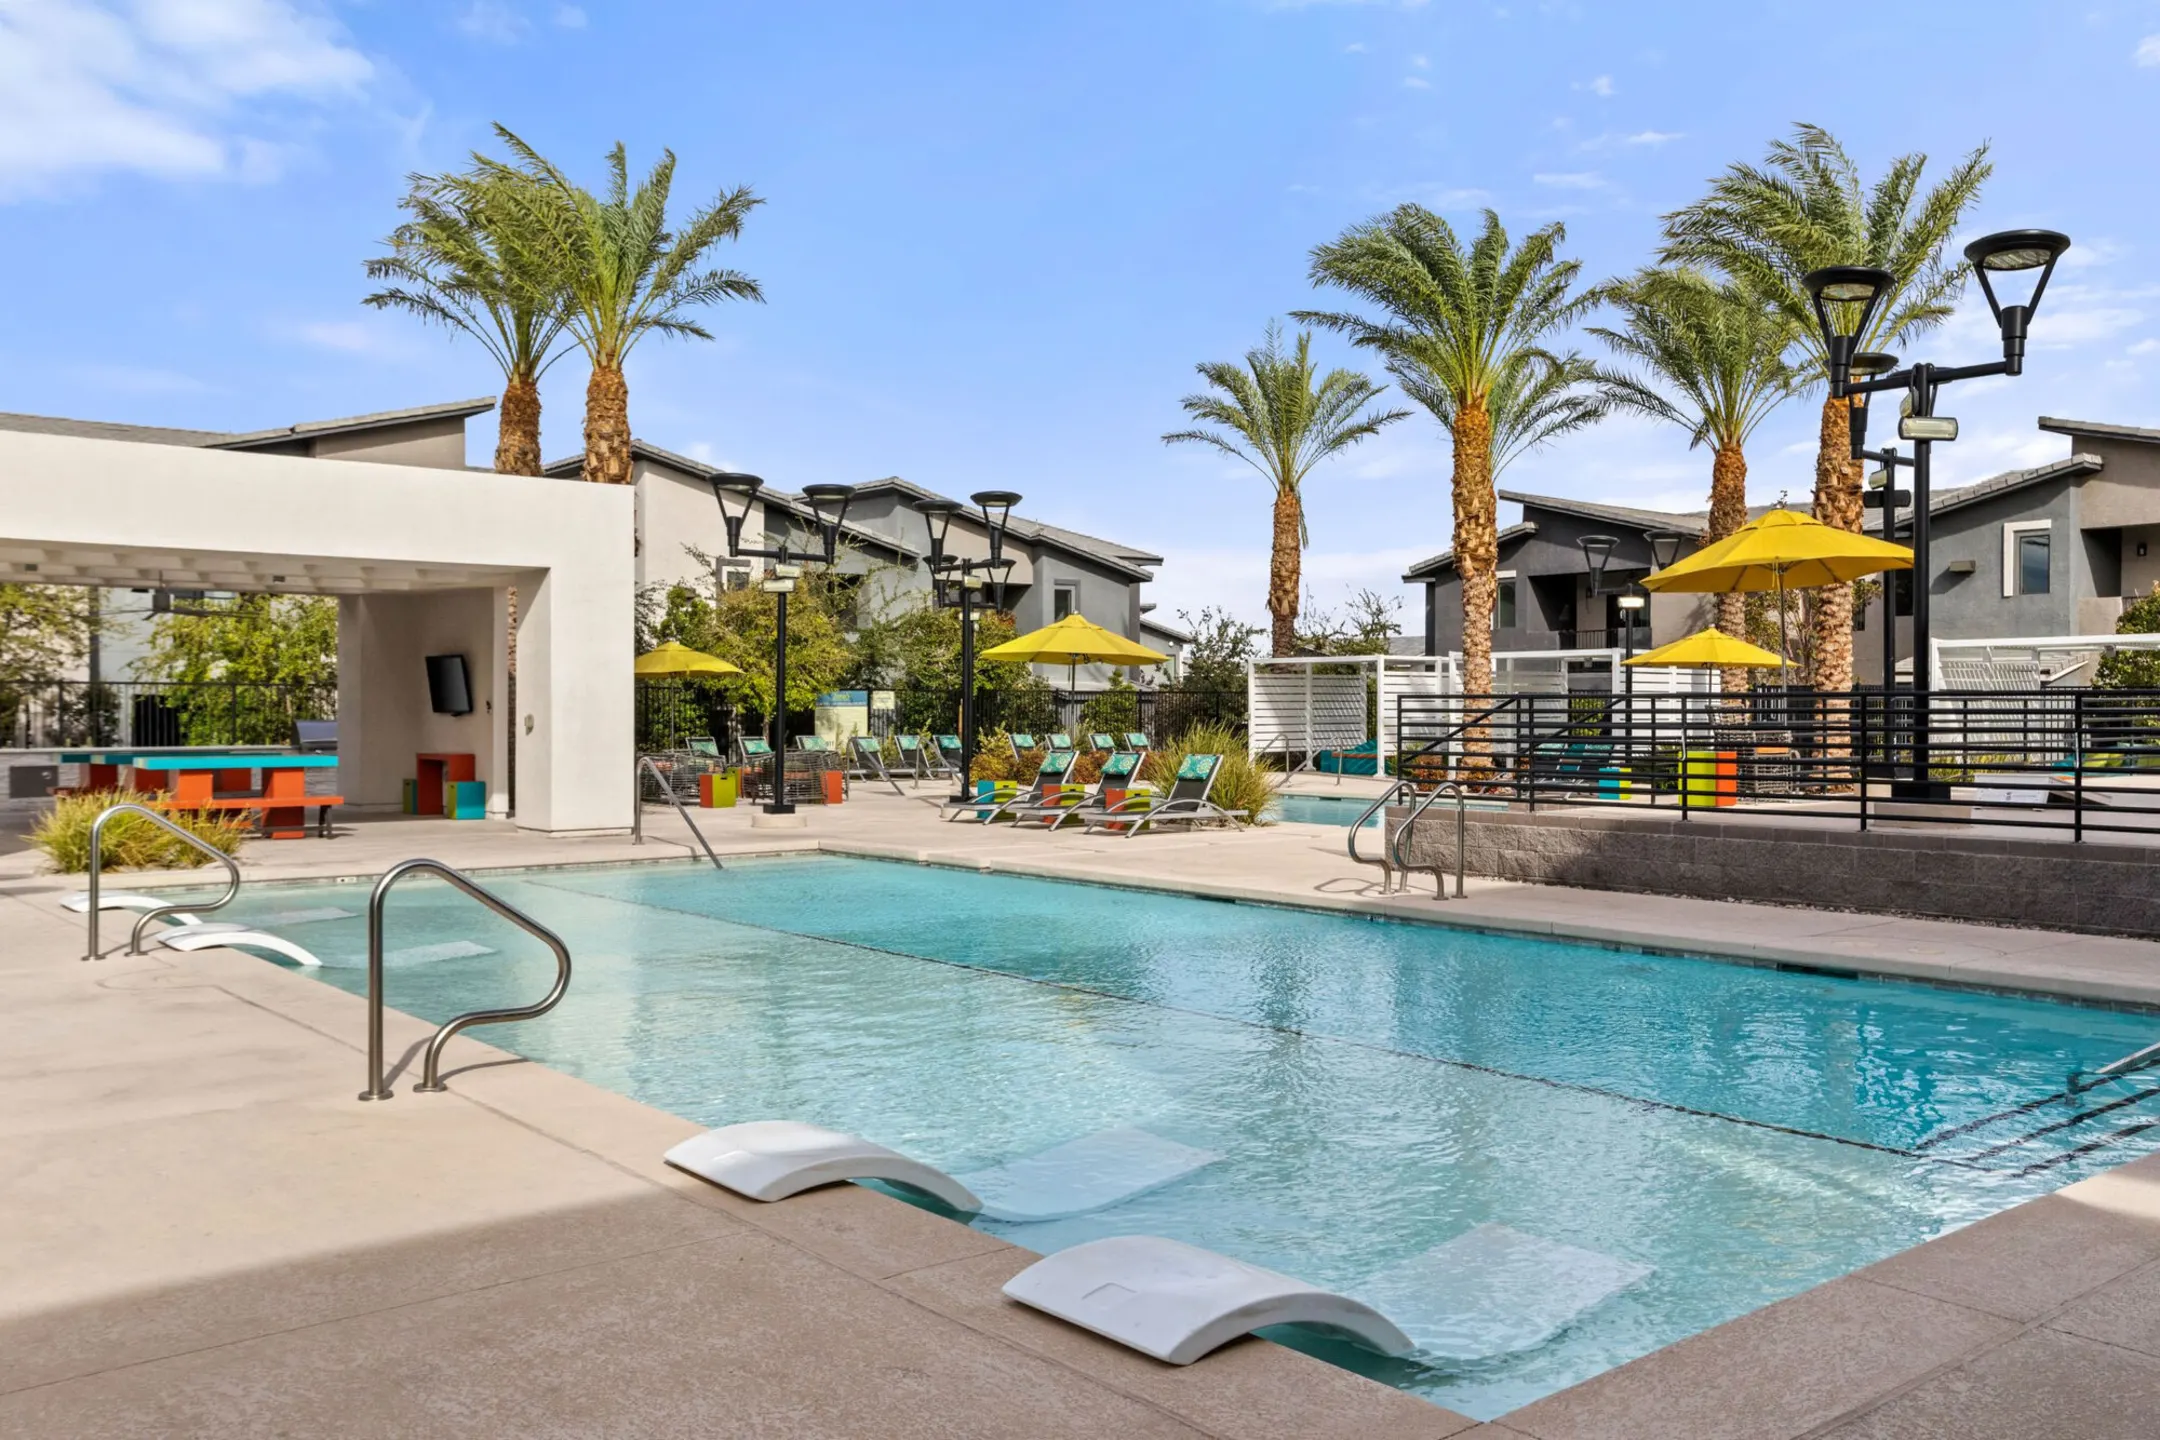 Pool - 2One5 Apartment Homes - Las Vegas, NV